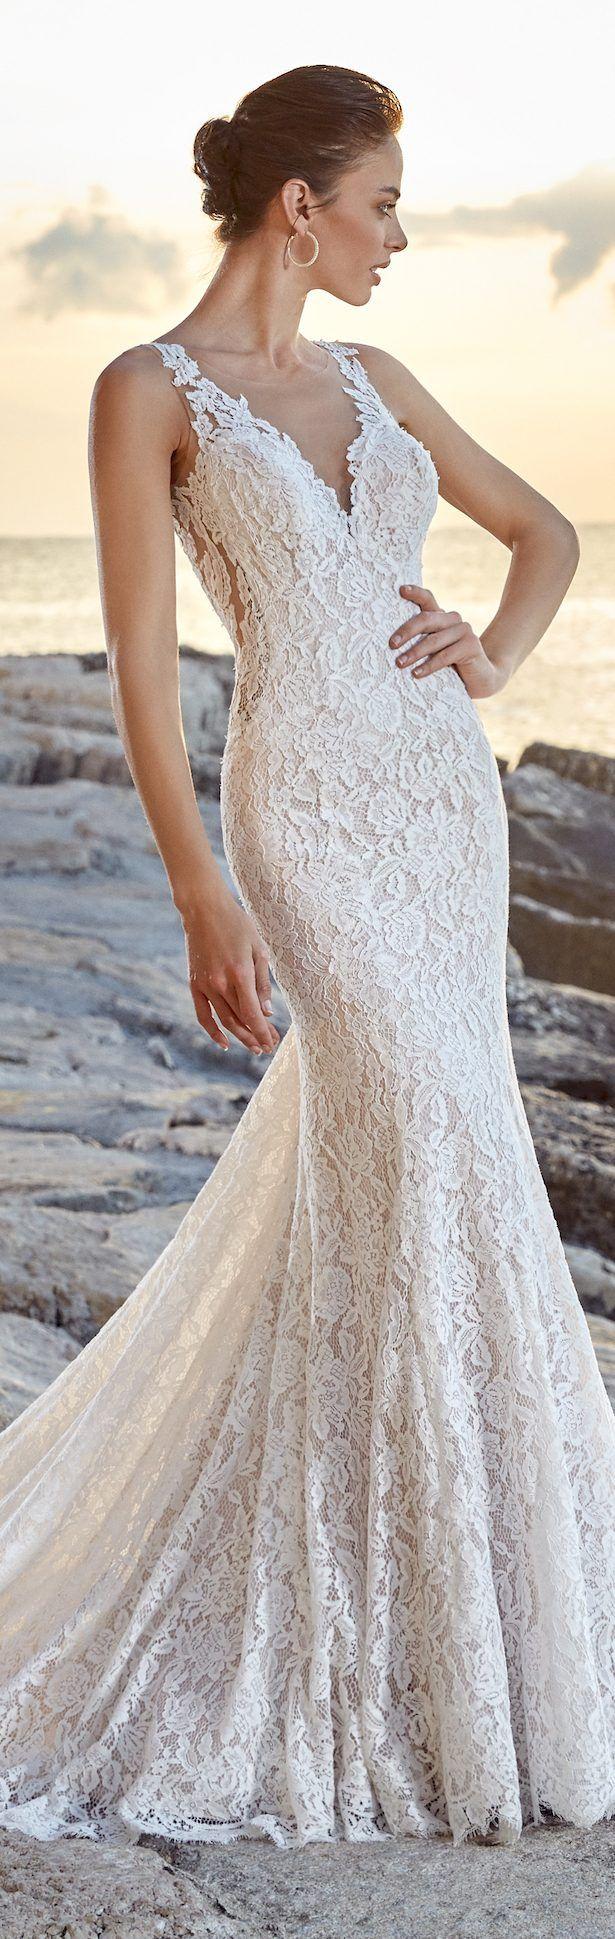 زفاف - Eddy K Dreams Wedding Dress Collection 2018